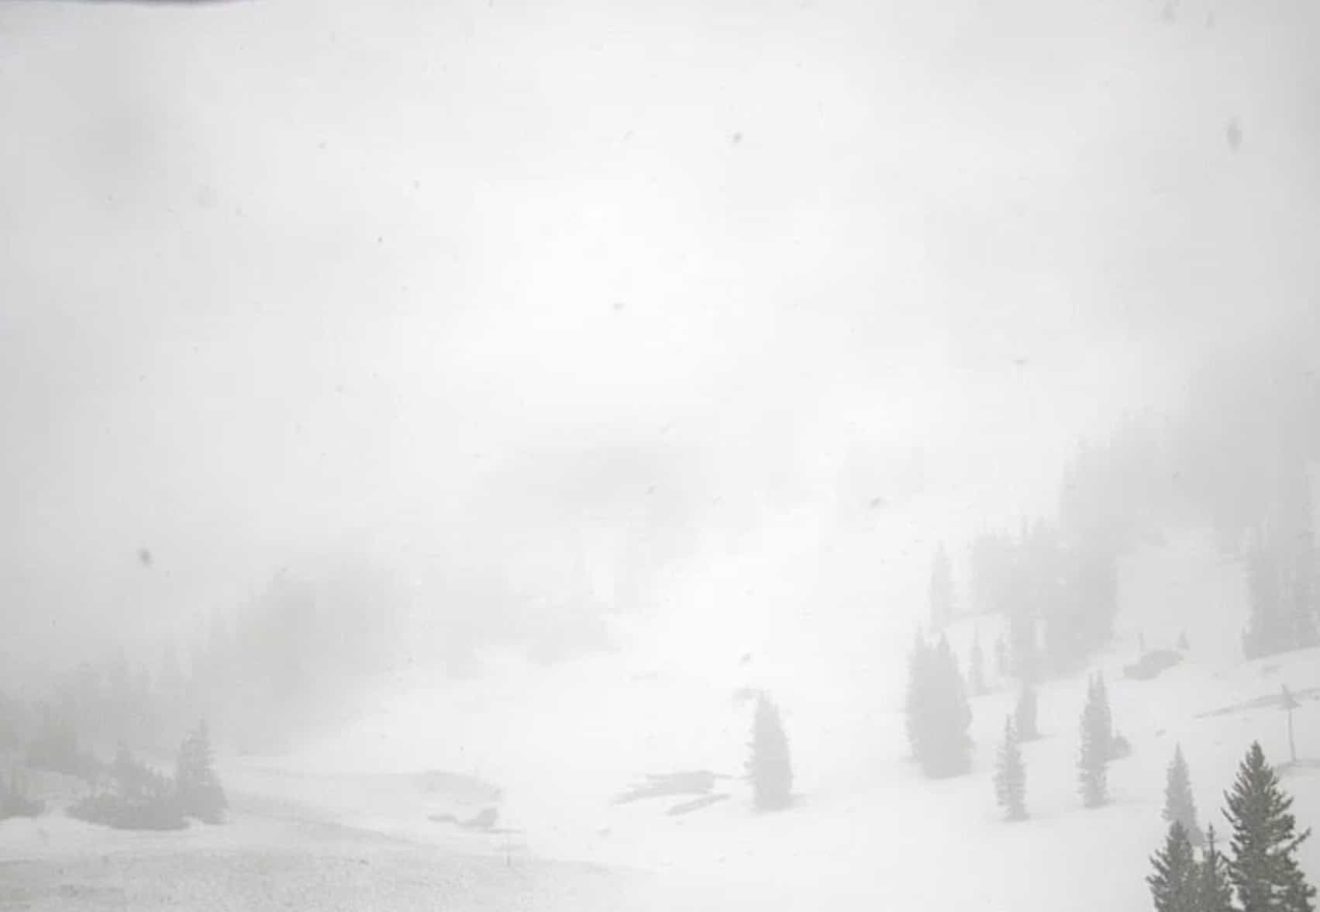 Alta Ski Area Sugarloaf Peak webcam at 10 am on June 20th, 2022.